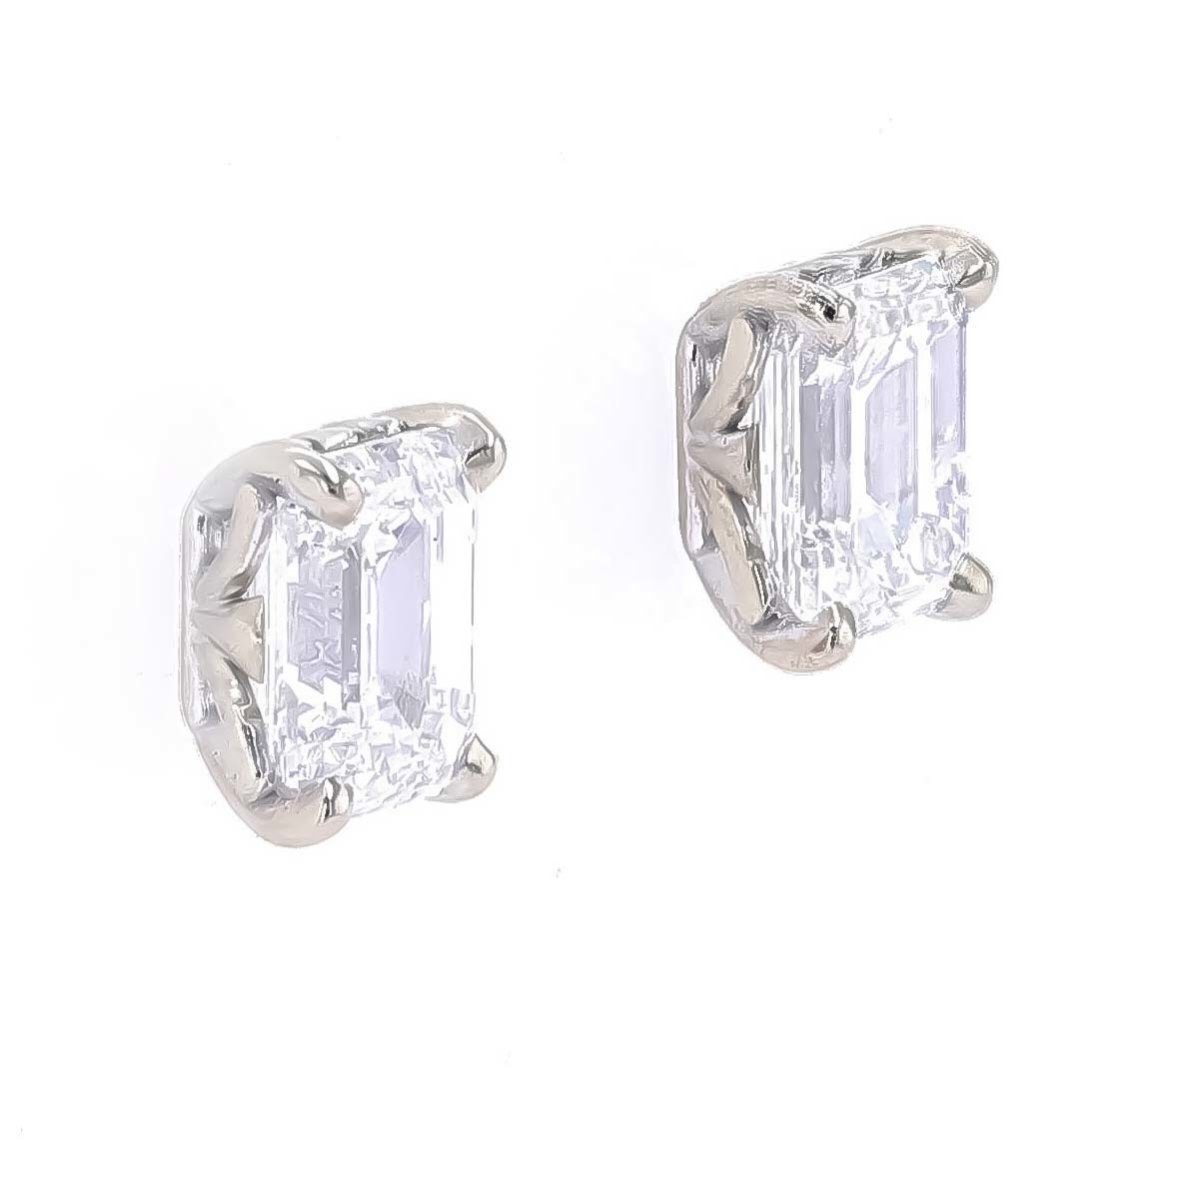 Emerald Cut Diamond Fleur-de-Lis Earring Studs 14KW - JewelsmithEarrings